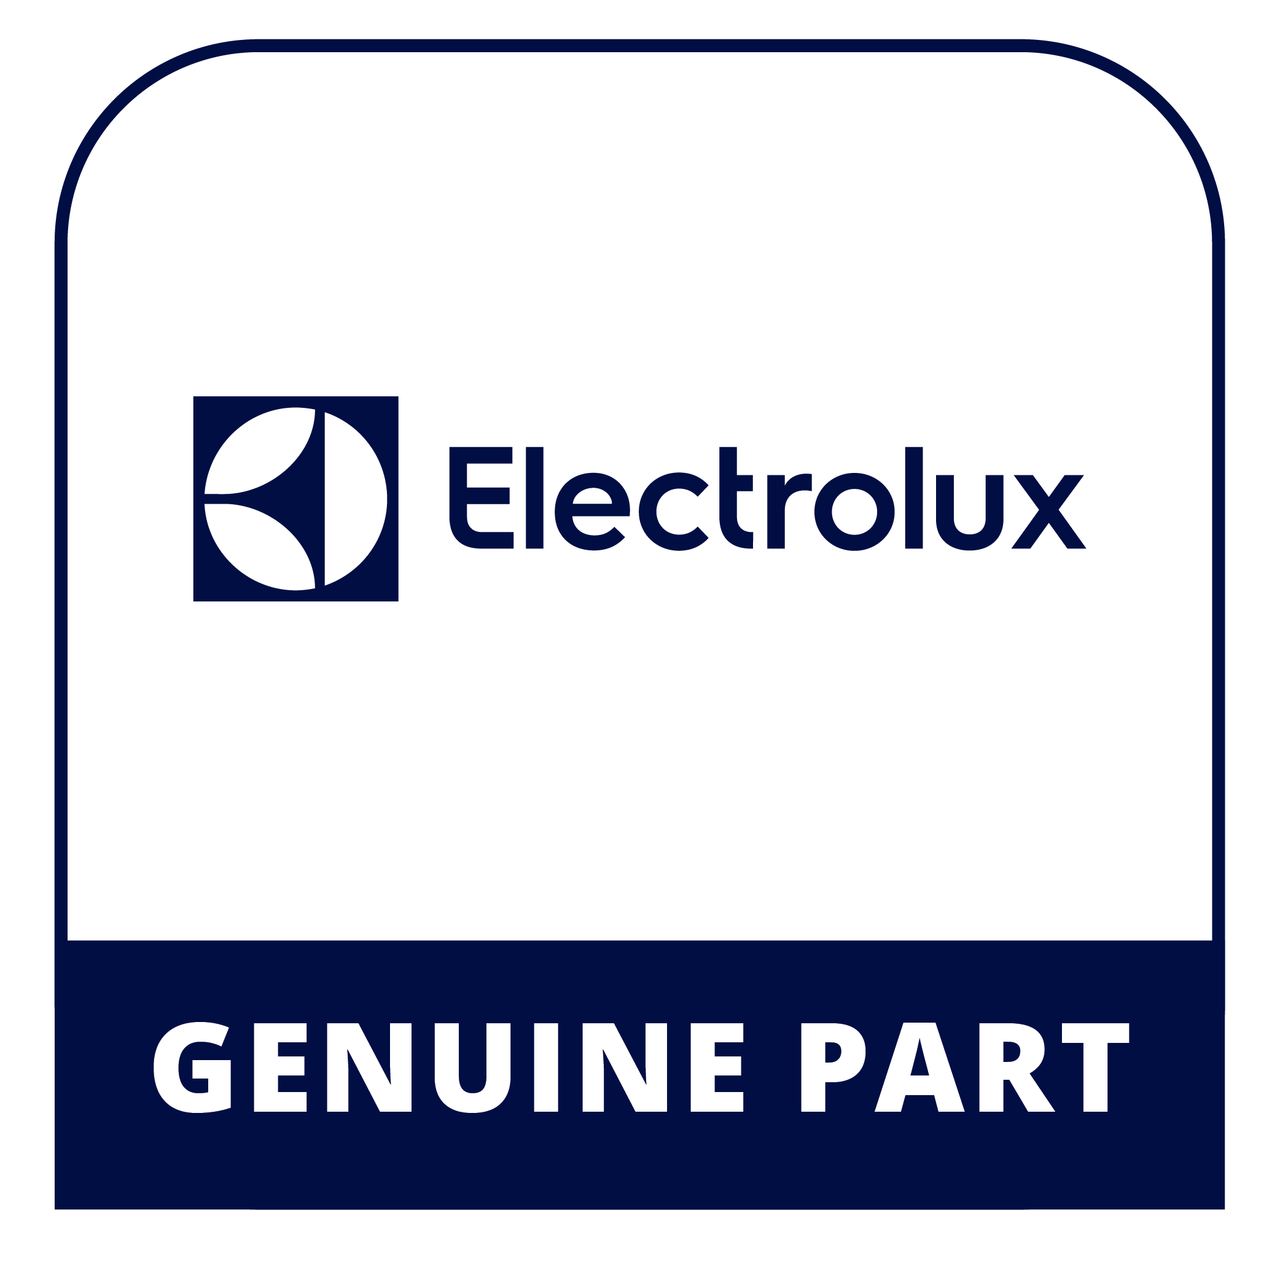 Frigidaire - Electrolux 318191026 Switch - Genuine Electrolux Part